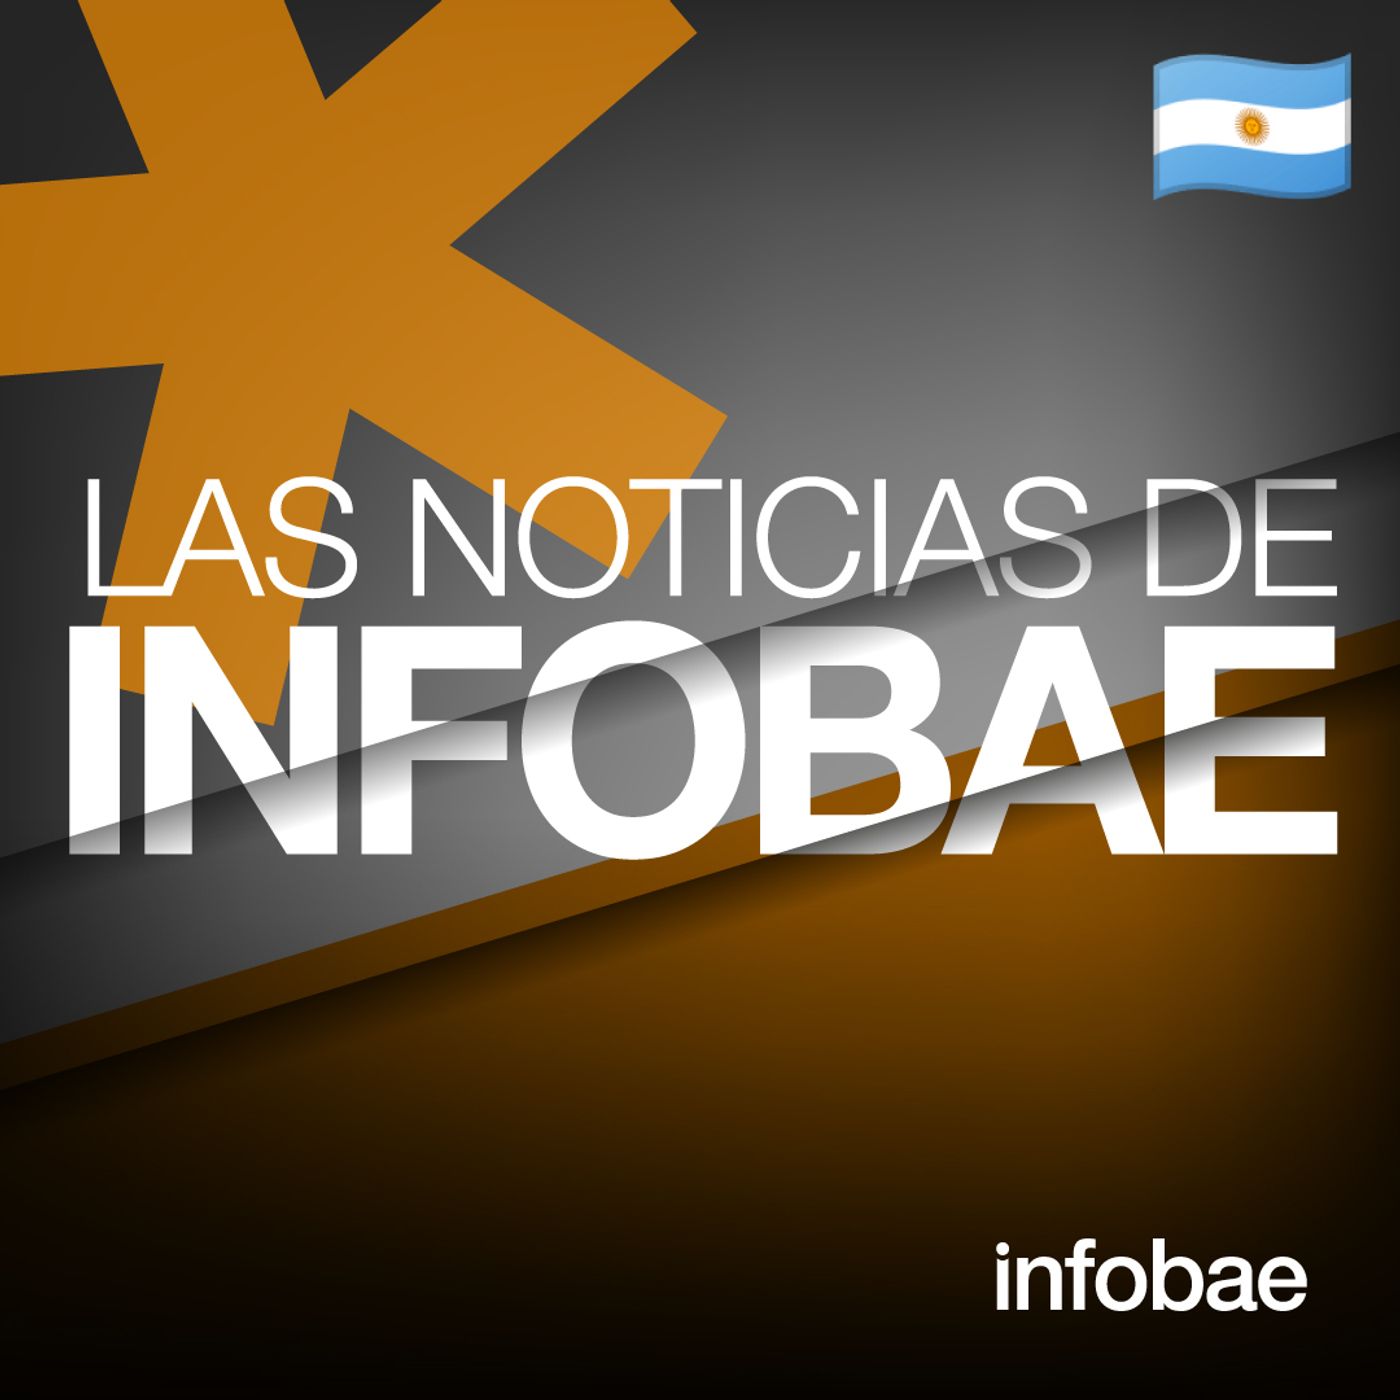 868: Las Noticias de Infobae (AR)